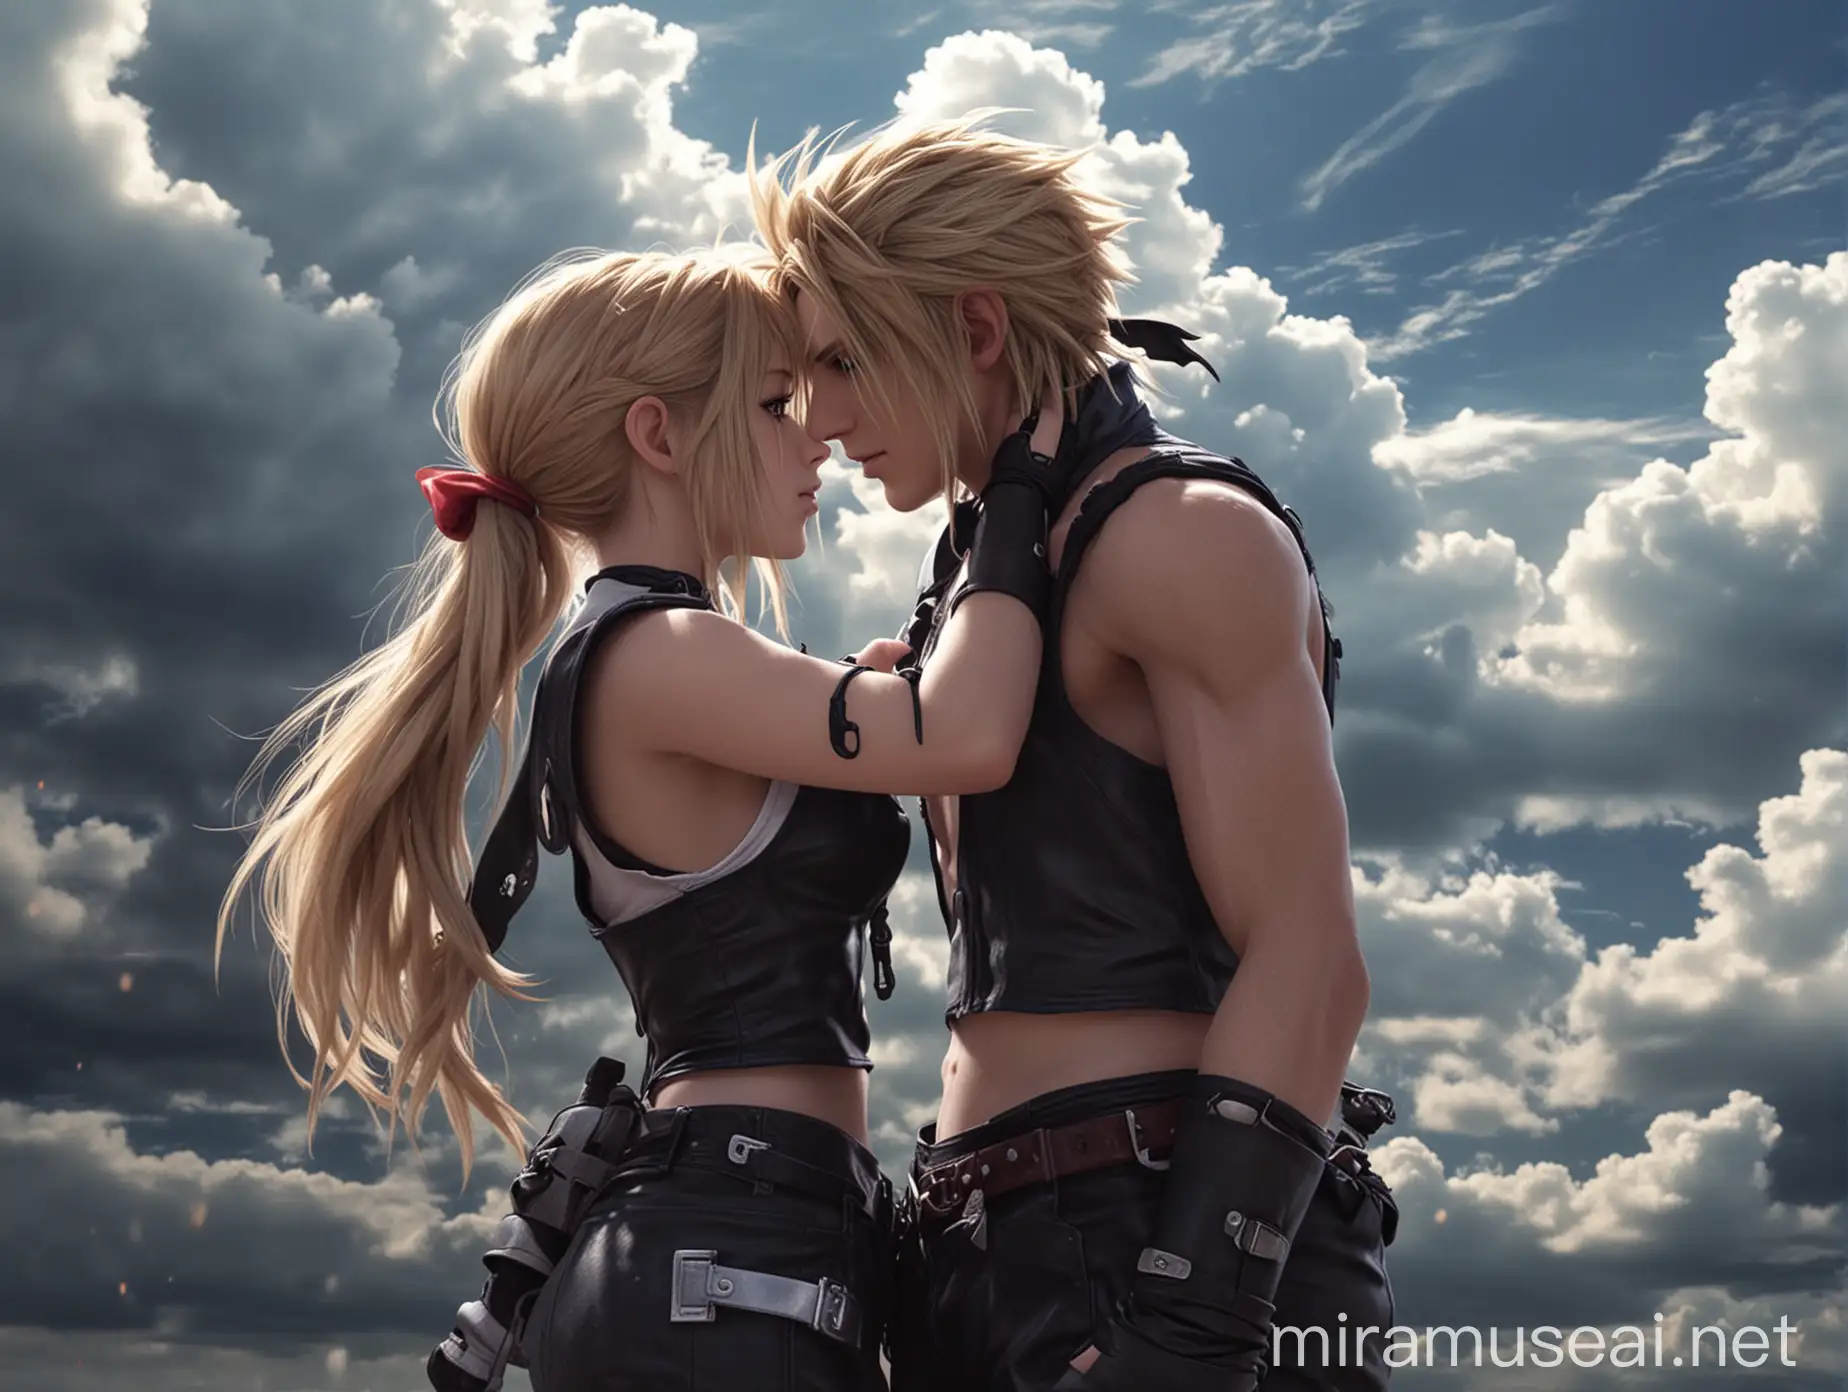 Romantic Cloud and Tifa Final Fantasy Art Falling in Love Scene